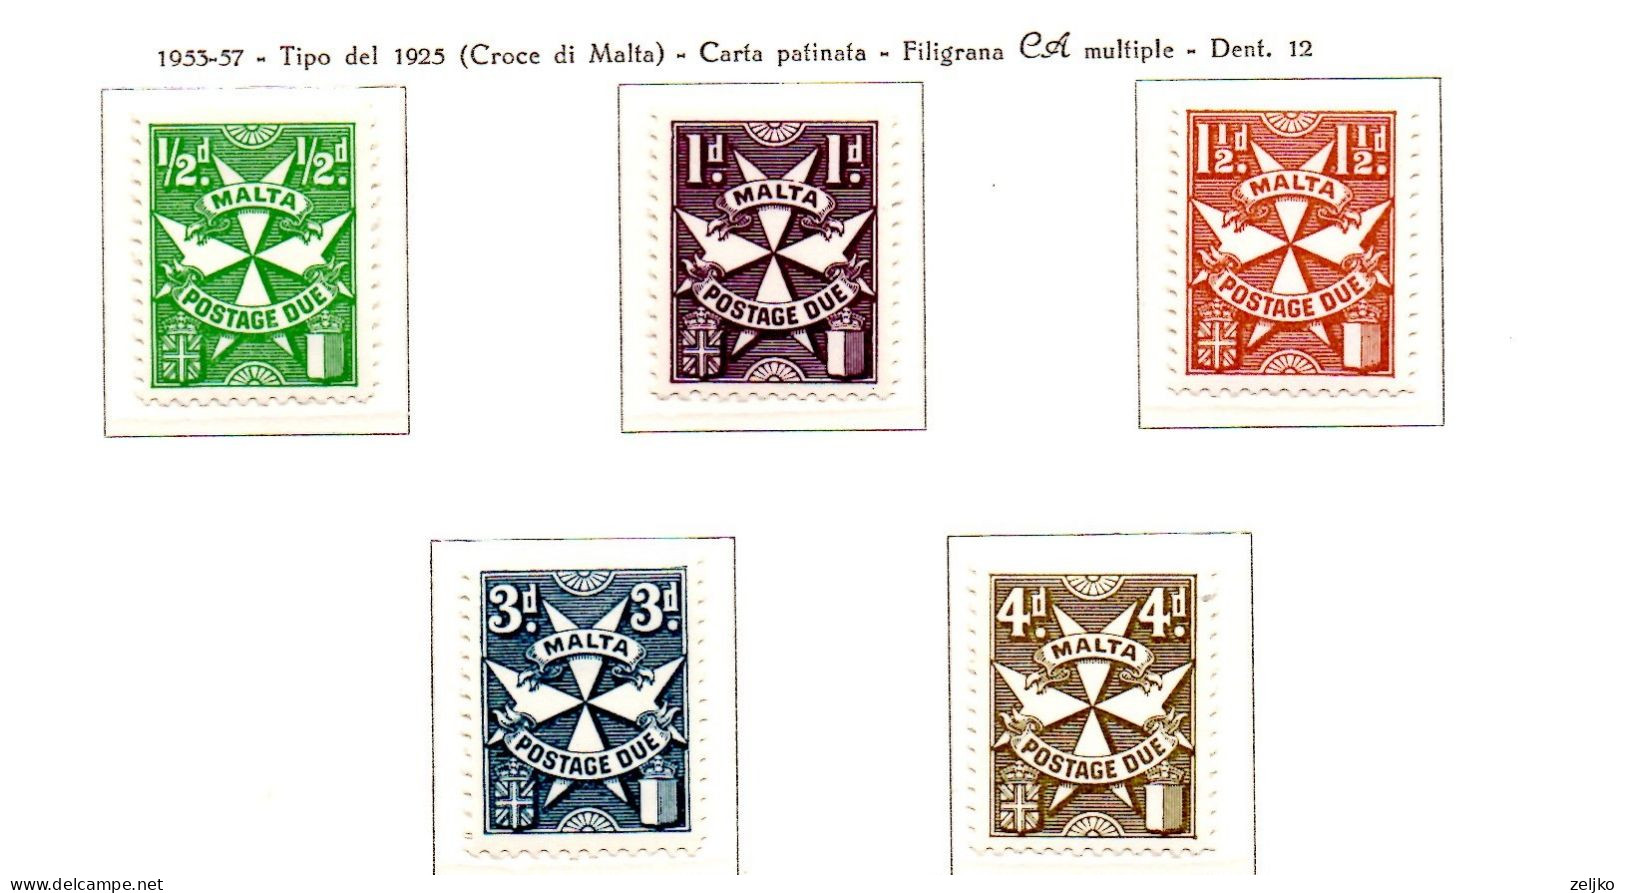 Malta, MNH, Postage Due, 1953, Michel 21- 25 - Malta